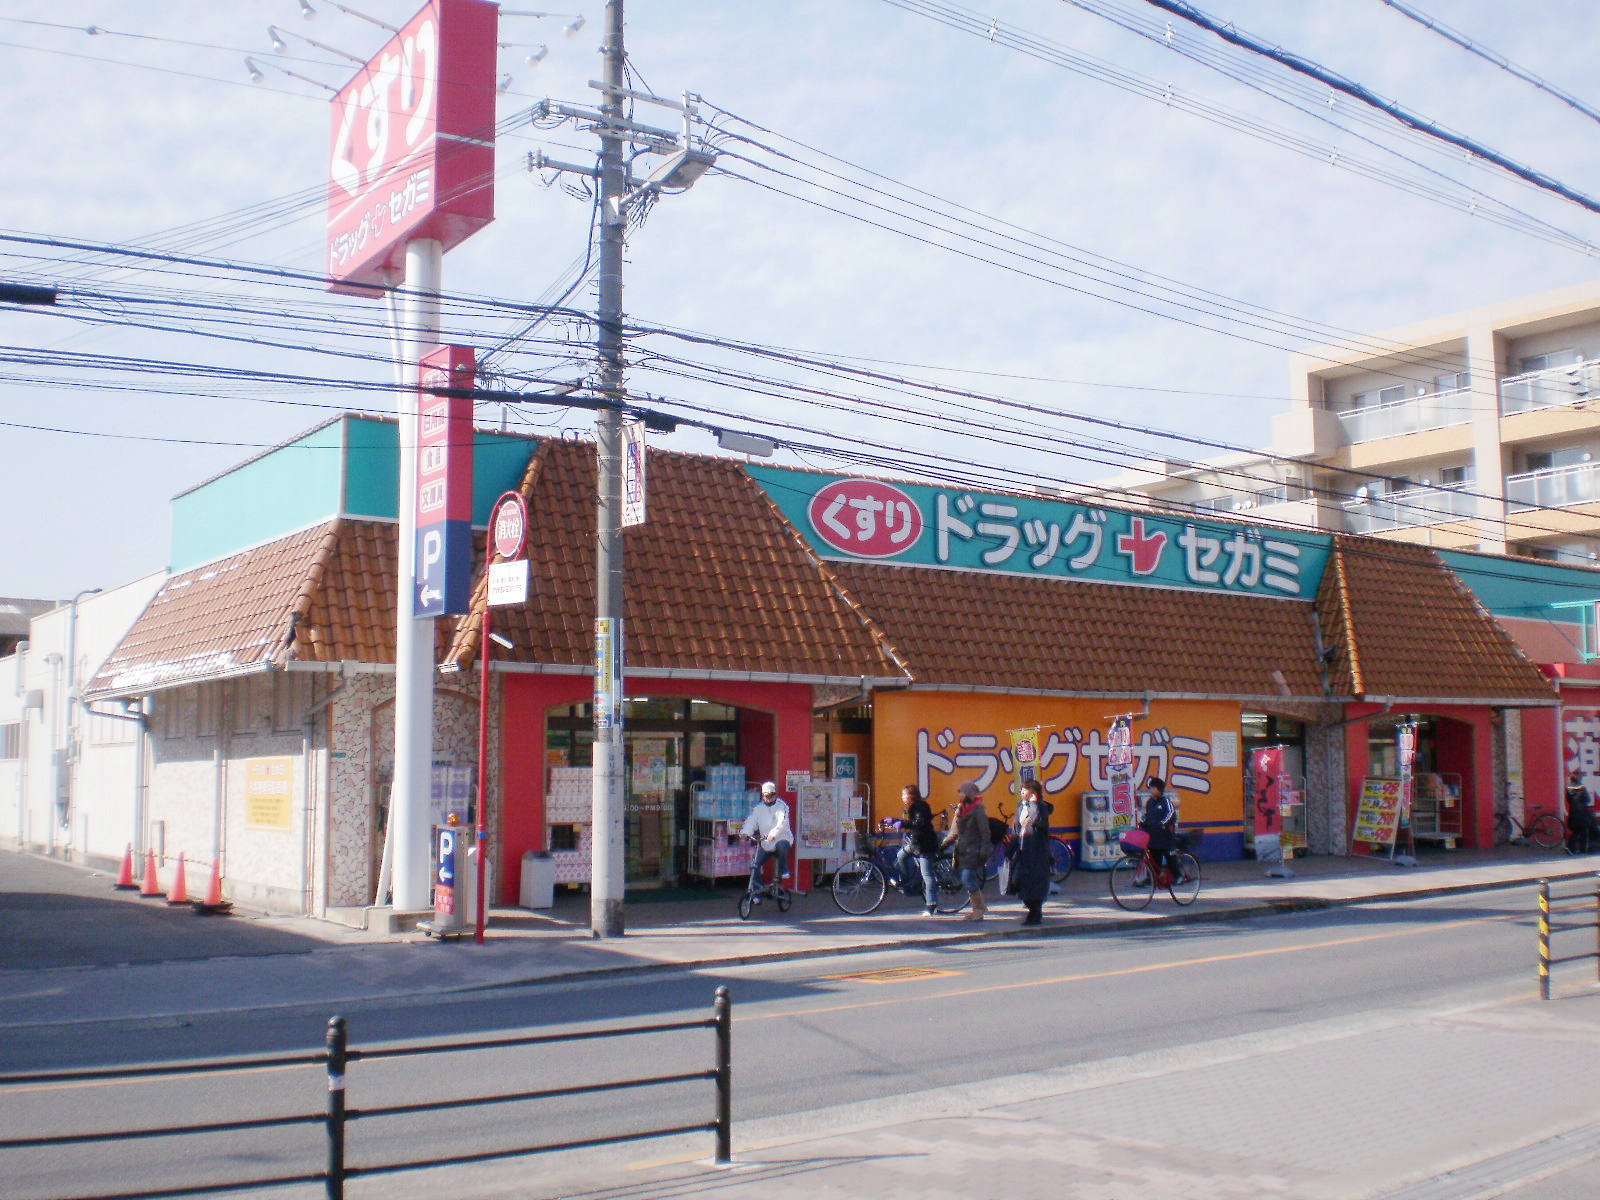 Dorakkusutoa. Drag Segami Kirenishi store up to (drugstore) 35m